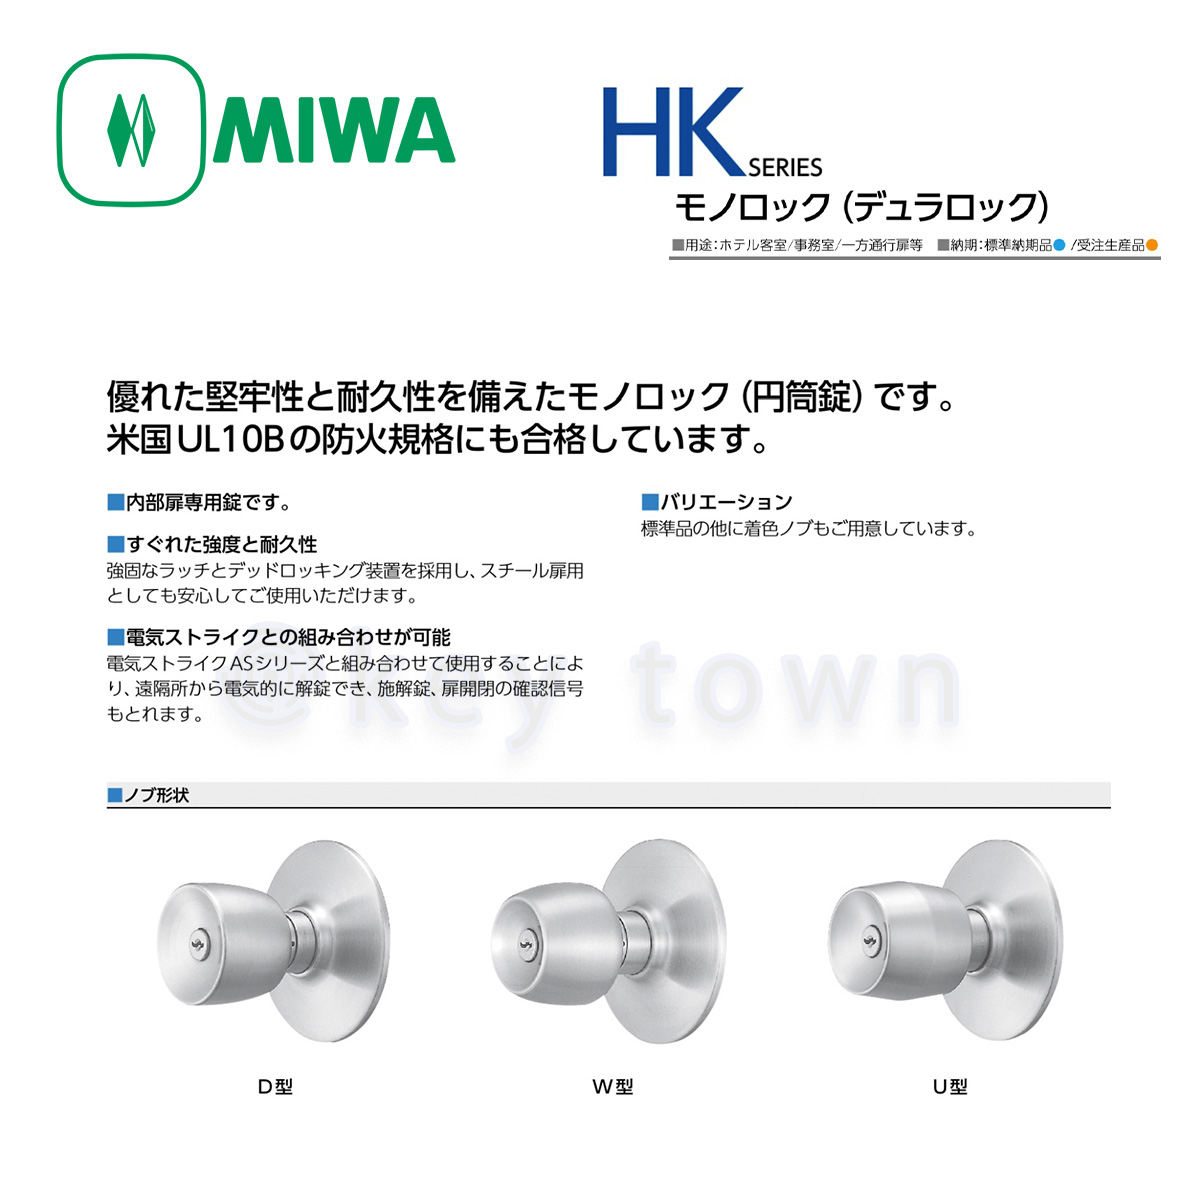 HK-1型 MIWA 美和ロック 押しボタン施錠タイプ モノロック錠 外ノブ